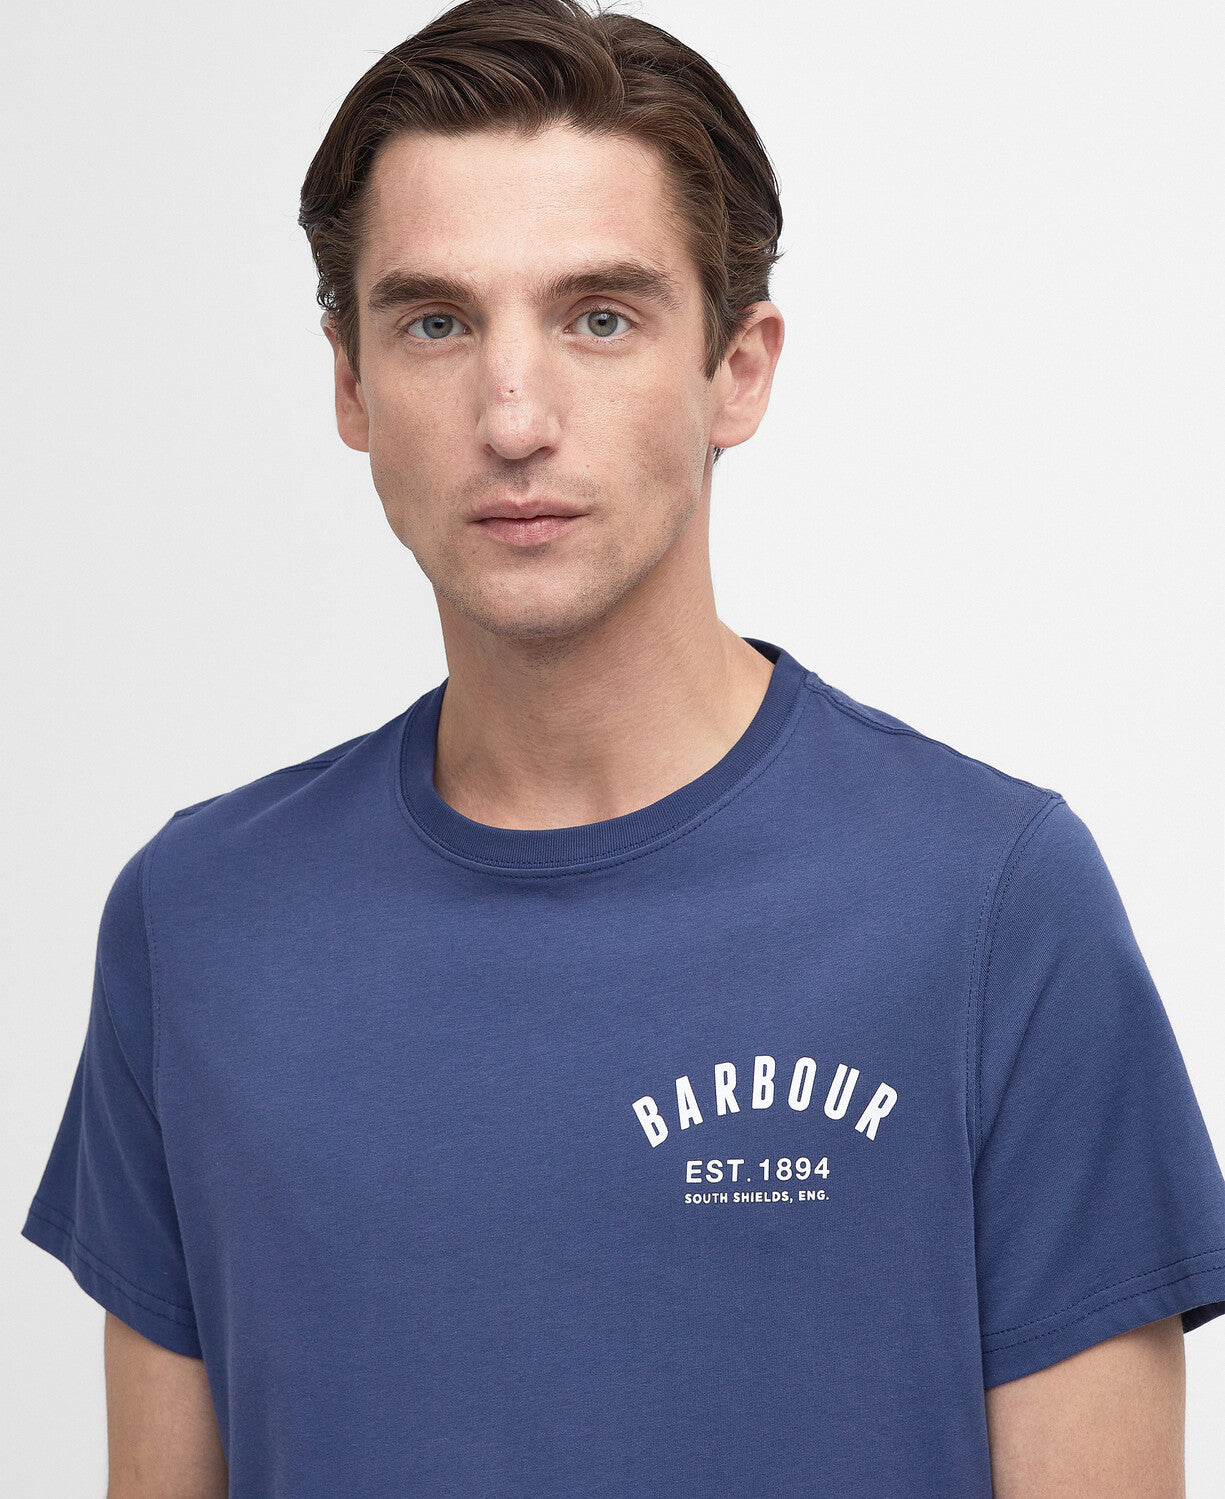 Barbour Preppy T-Shirt